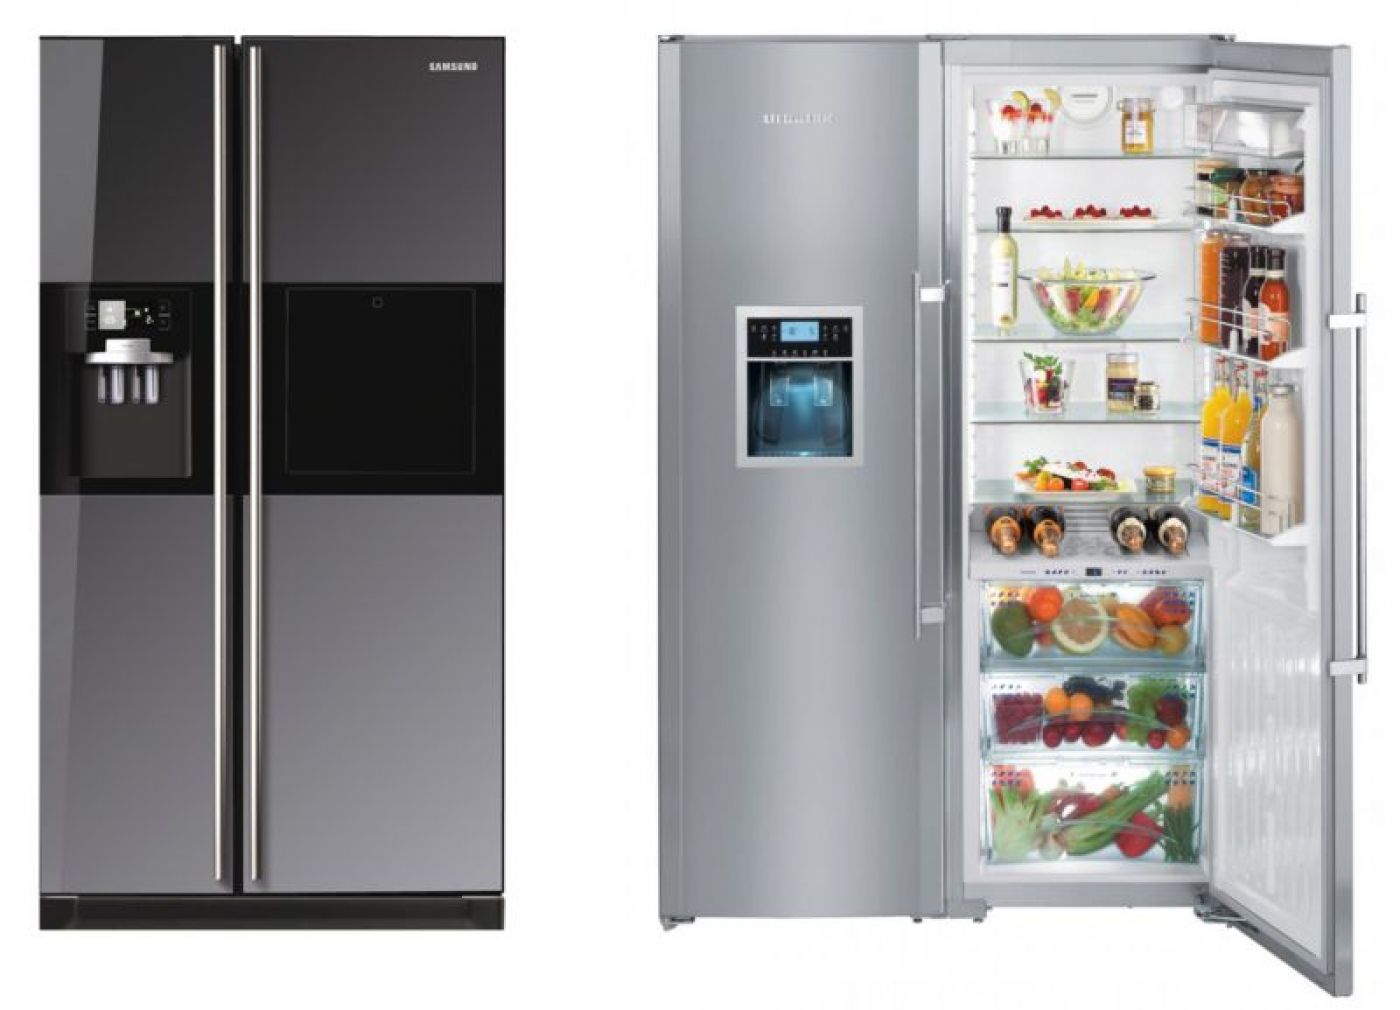 Купить холодильник в алматы. Двойной холодильник. Двухкамерный холодильник. Большой двухкамерный холодильник. Импортный холодильник двухкамерный.